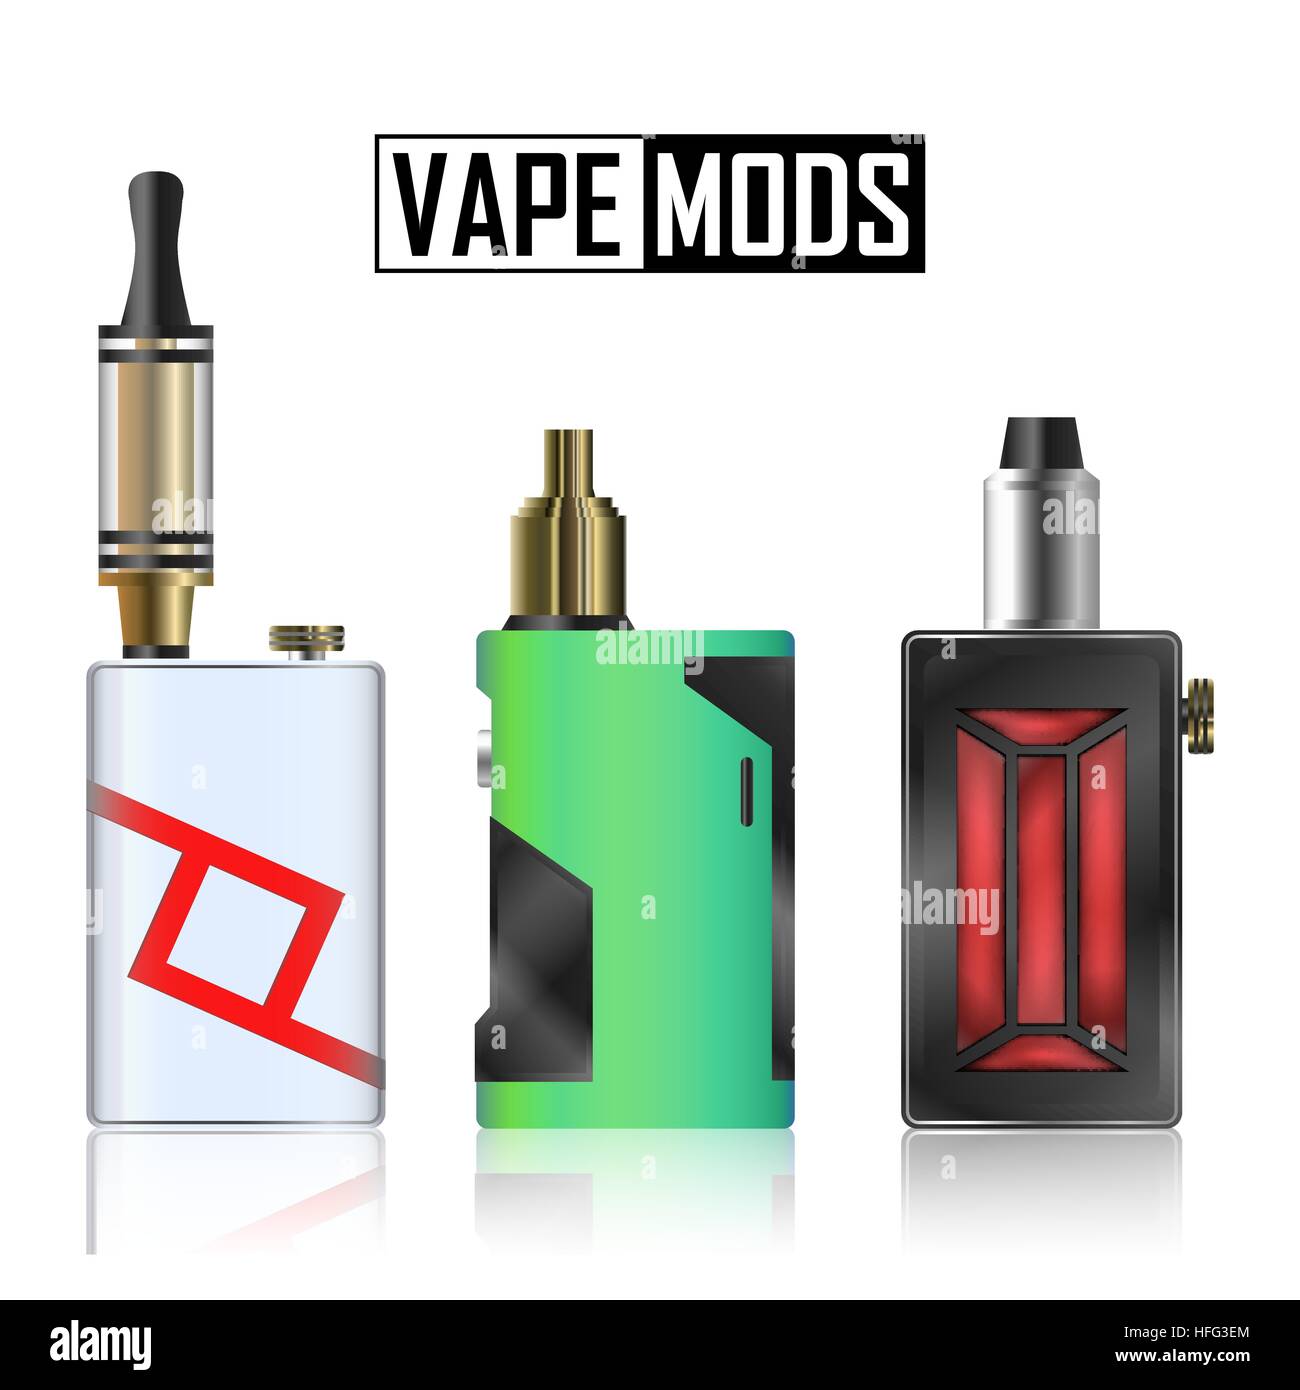 E-Cigarette and Vaporizer Box Mods